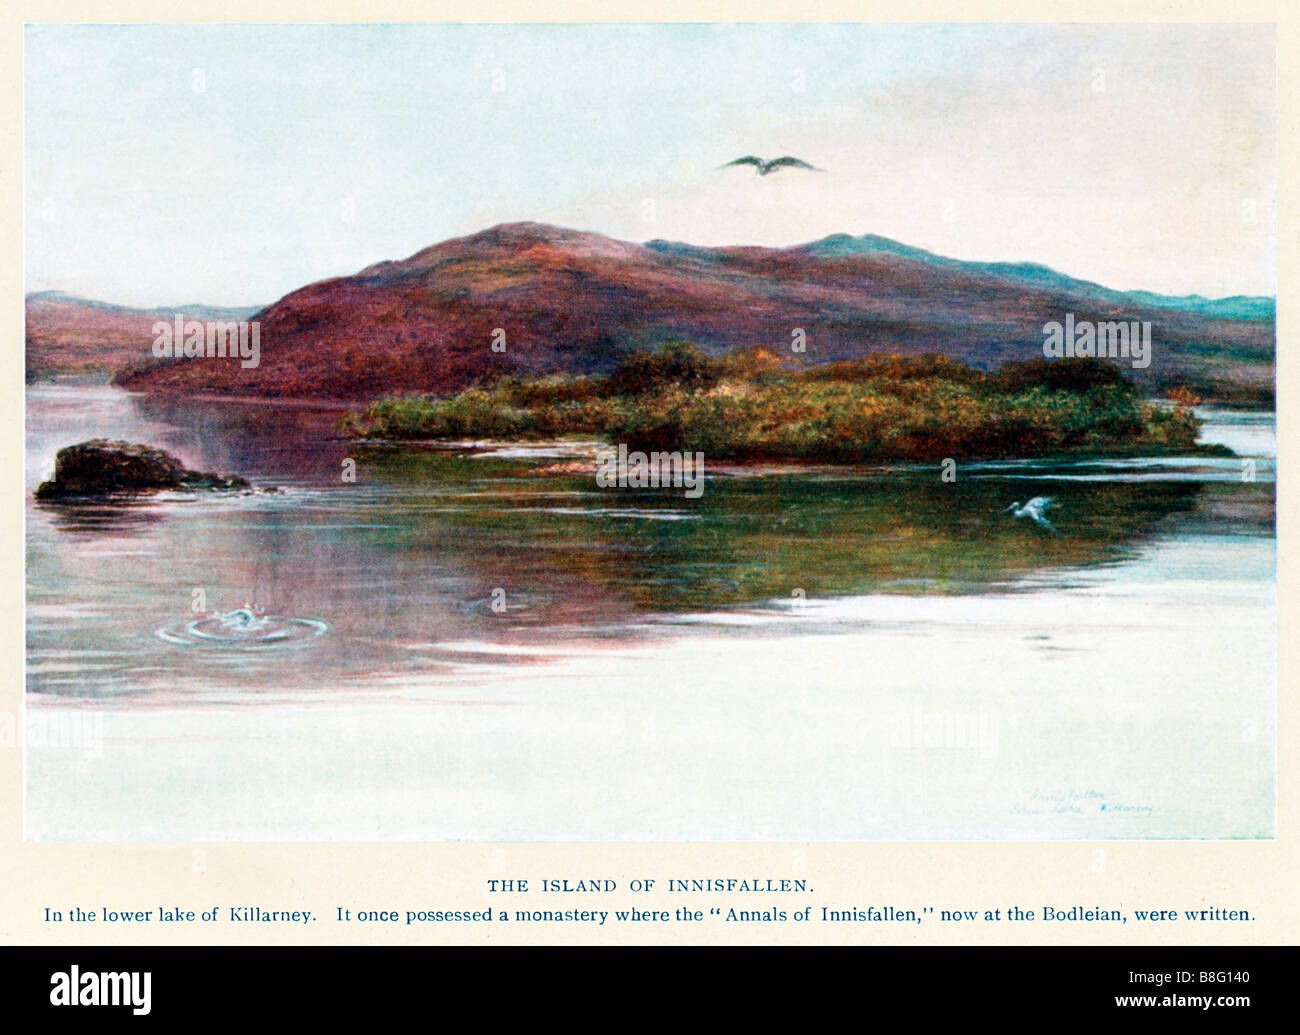 Insel der Innisfallen Killarney 1910 Malerei der Insel in den Untersee, wo die Annalen Innisfallen geschrieben wurden Stockfoto